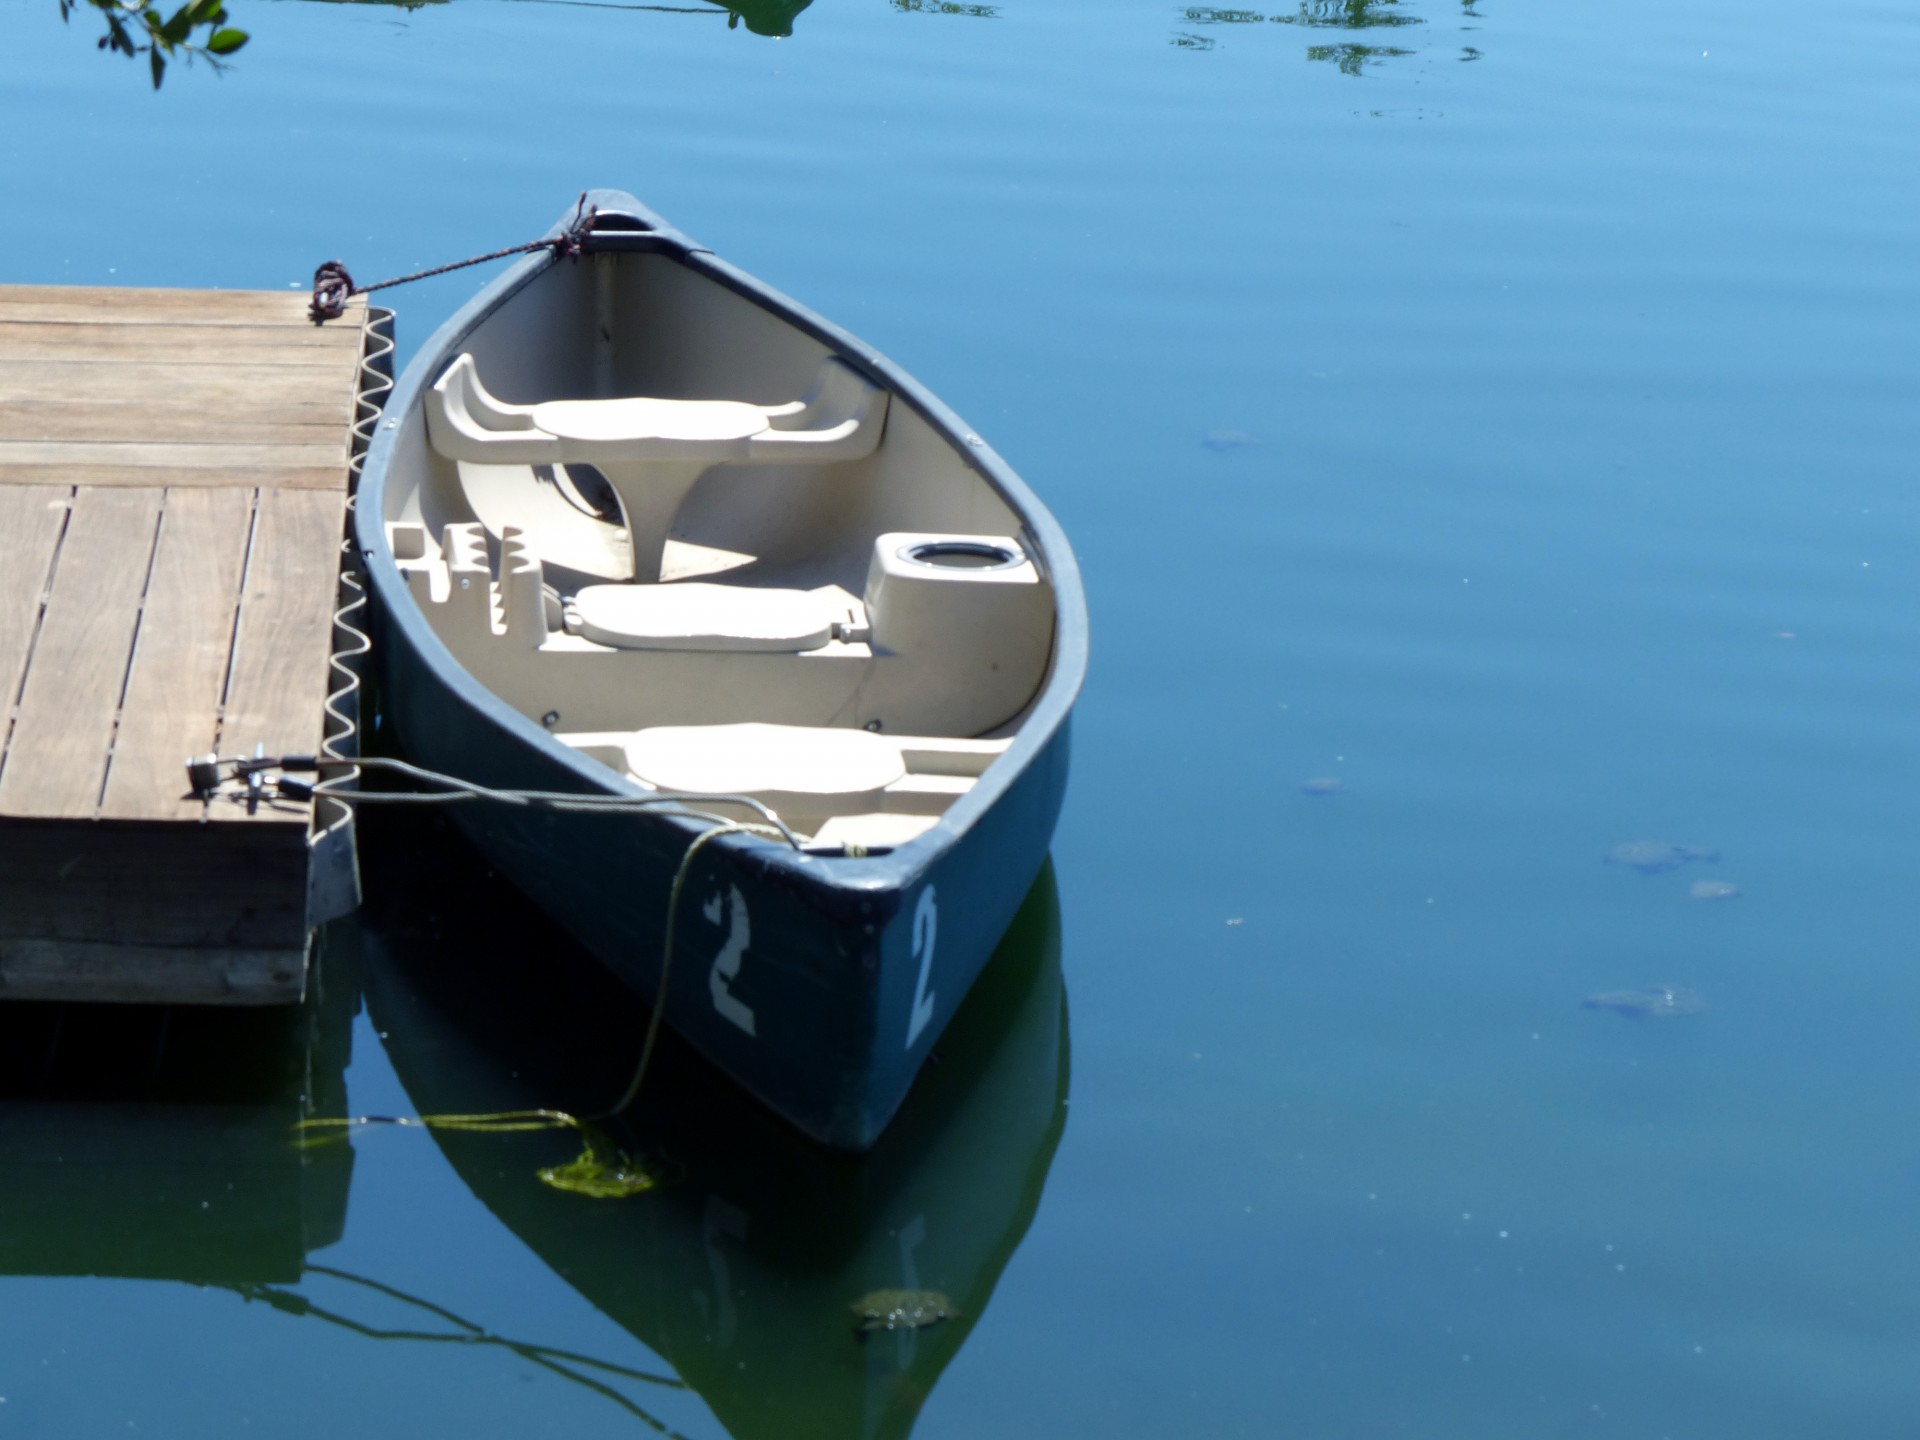 boat rowboat lake free photo